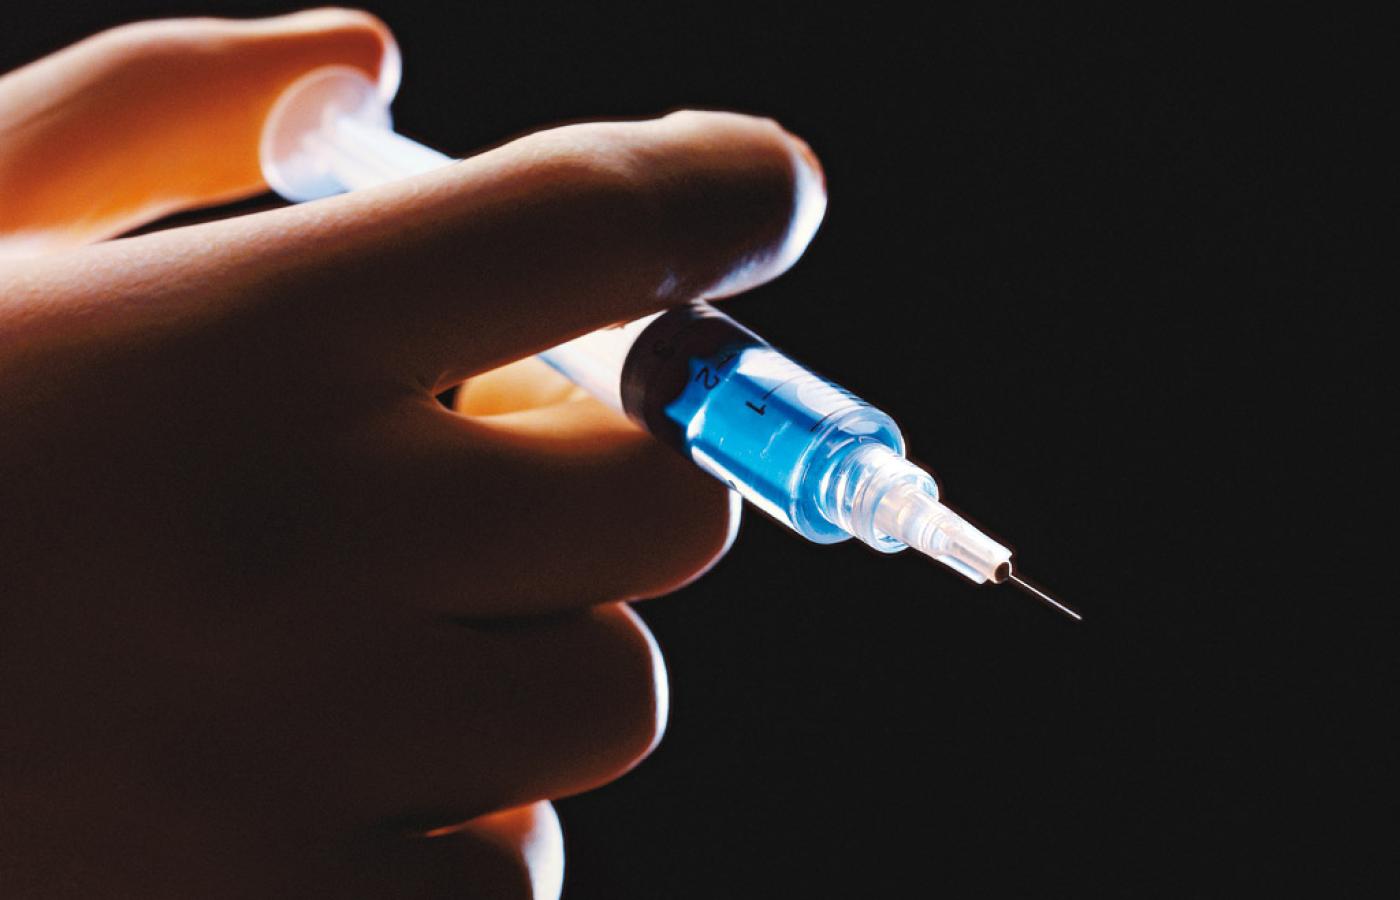 W globalnej sieci bardzo aktywne są ruchy antyszczepionkowe nakręcające histerię wokół szczepień.